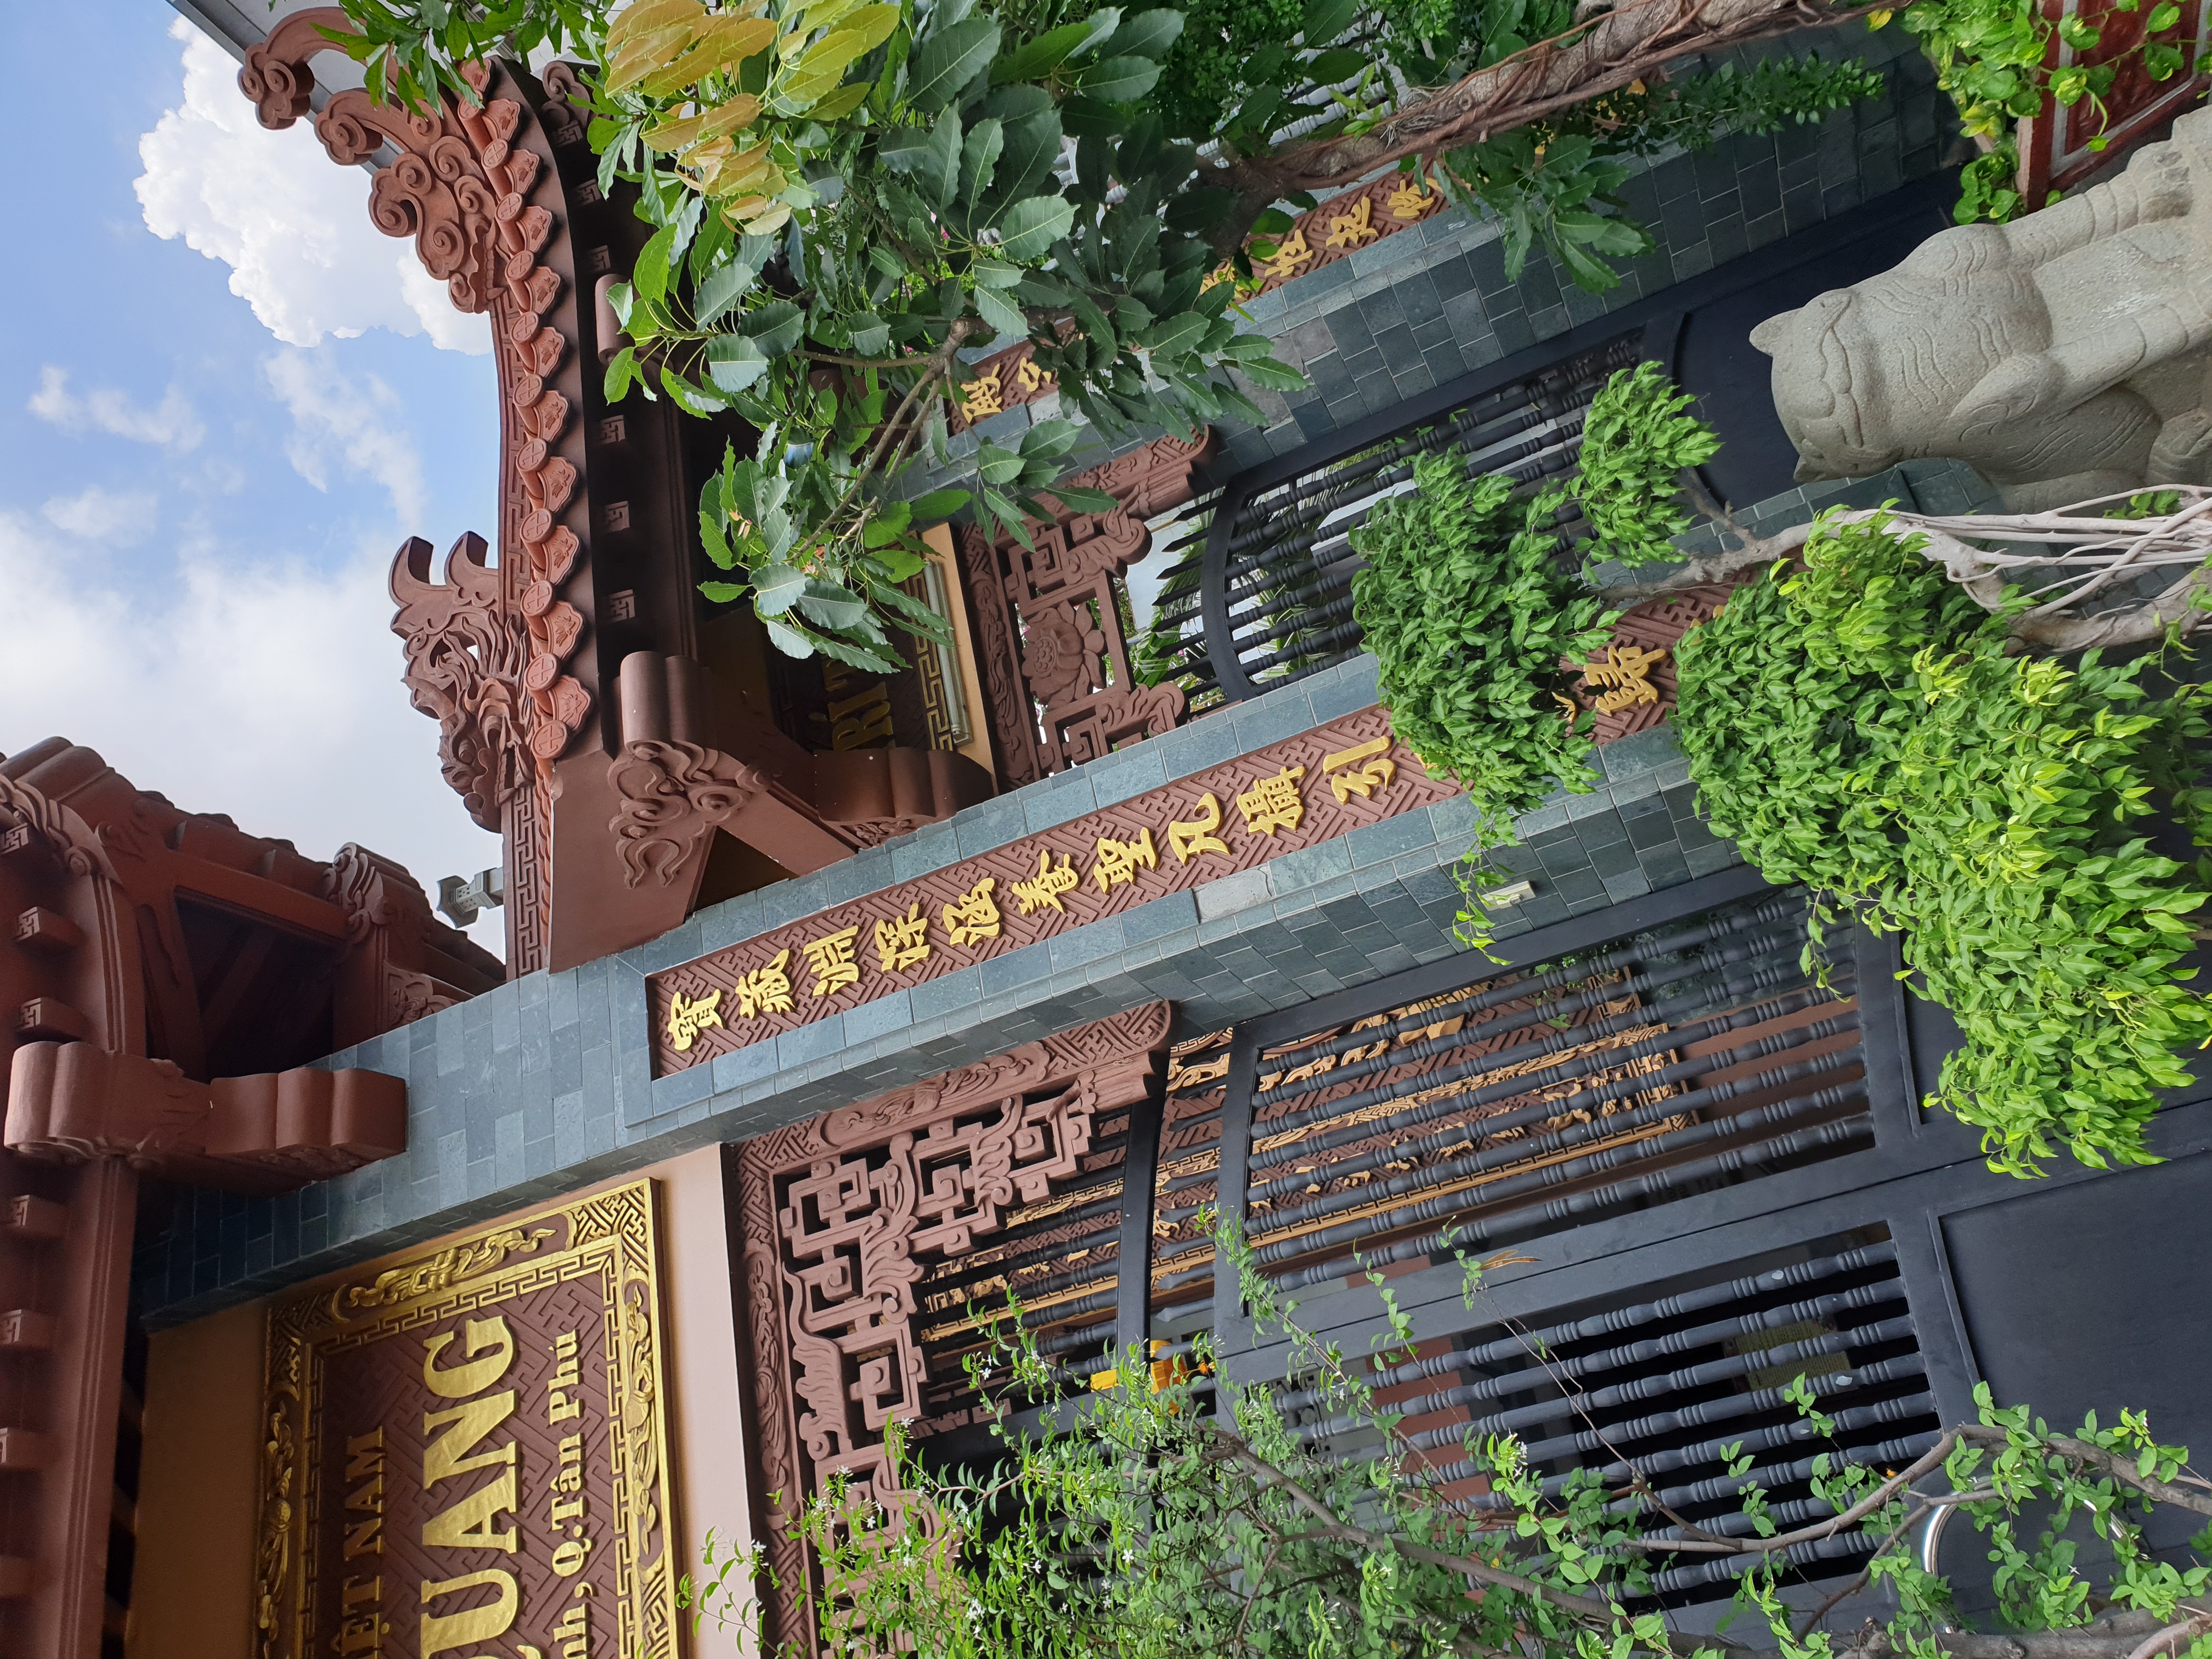 Cổng mặt cạnh là một kiến trúc độc đáo và có tính chất văn hóa cao tại Việt Nam. Điểm đặc biệt ở đây là các mặt cạnh của cổng được chạm khắc với các hình ảnh động vật và câu đối mang tính chất may mắn. Xem hình ảnh liên quan để khám phá vẻ đẹp của cổng mặt cạnh.